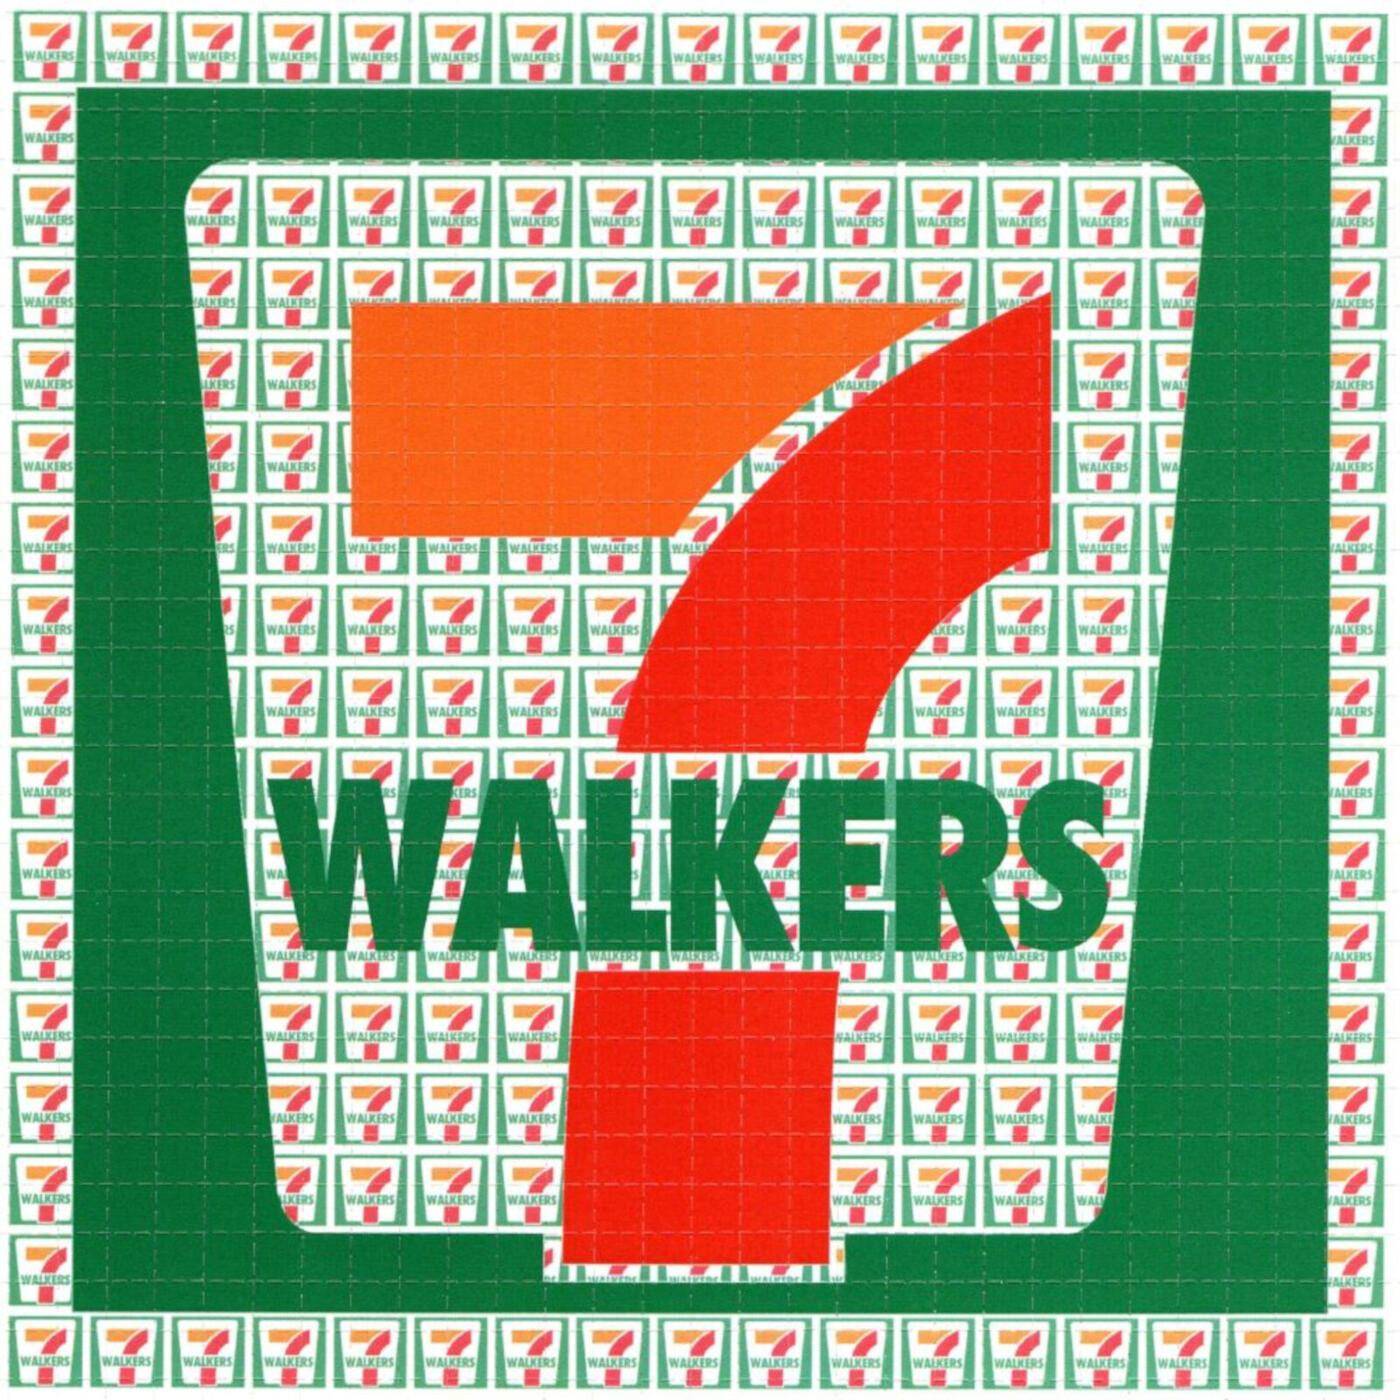 7 Walkers